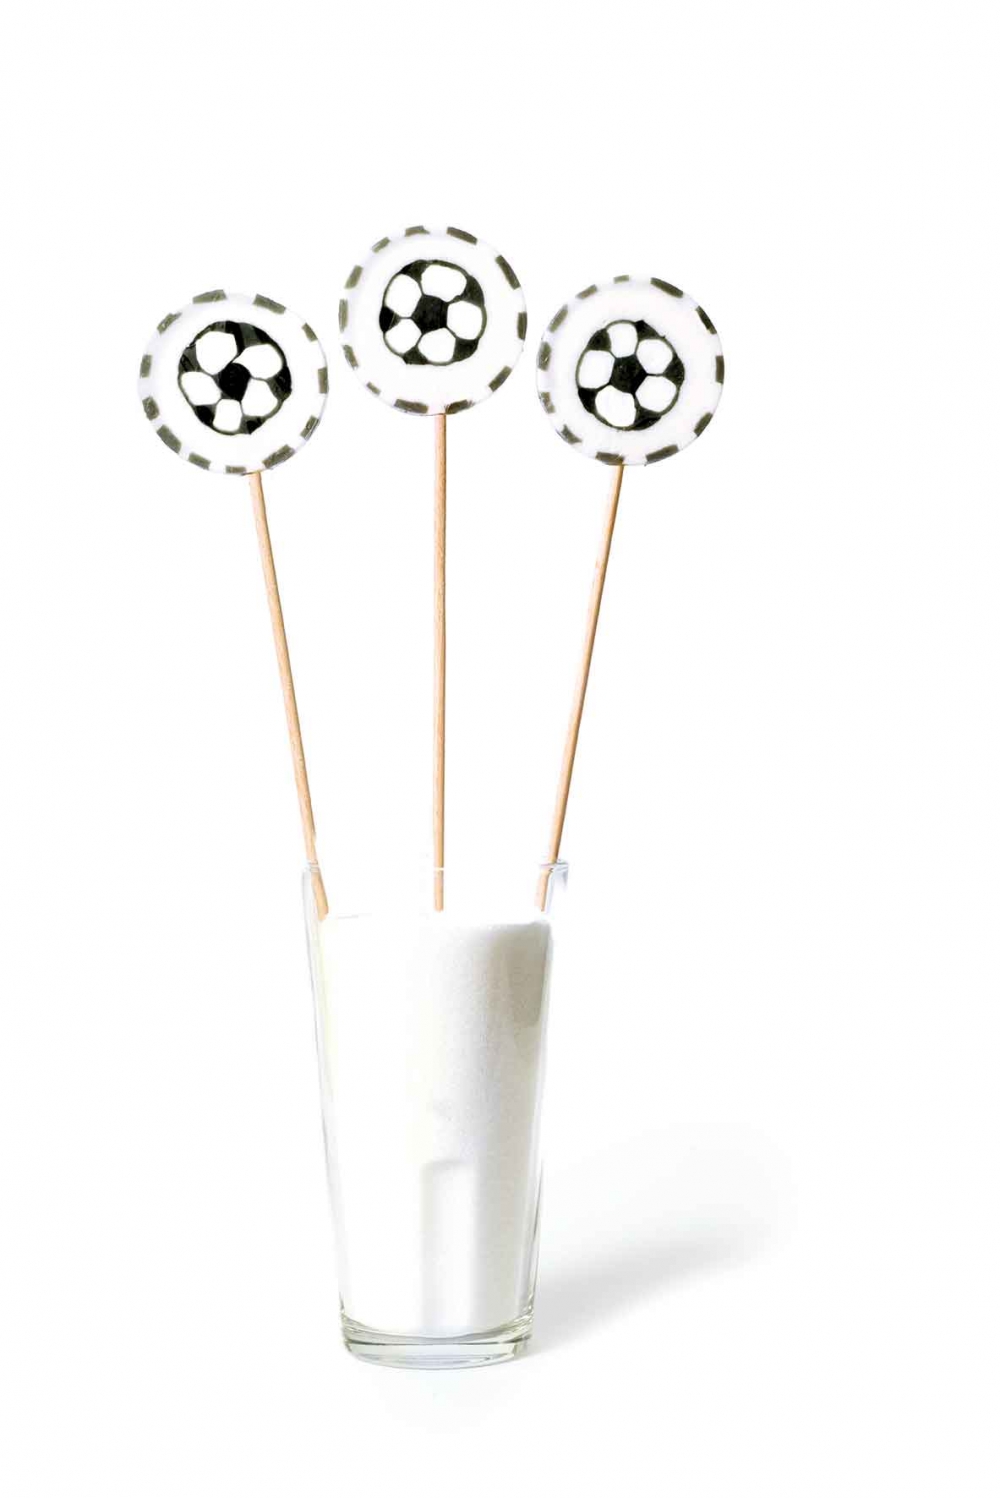 Stor slikkepinne med motiv av fotball. Selges en og en. Ø 5 cm H 23,5 cm.